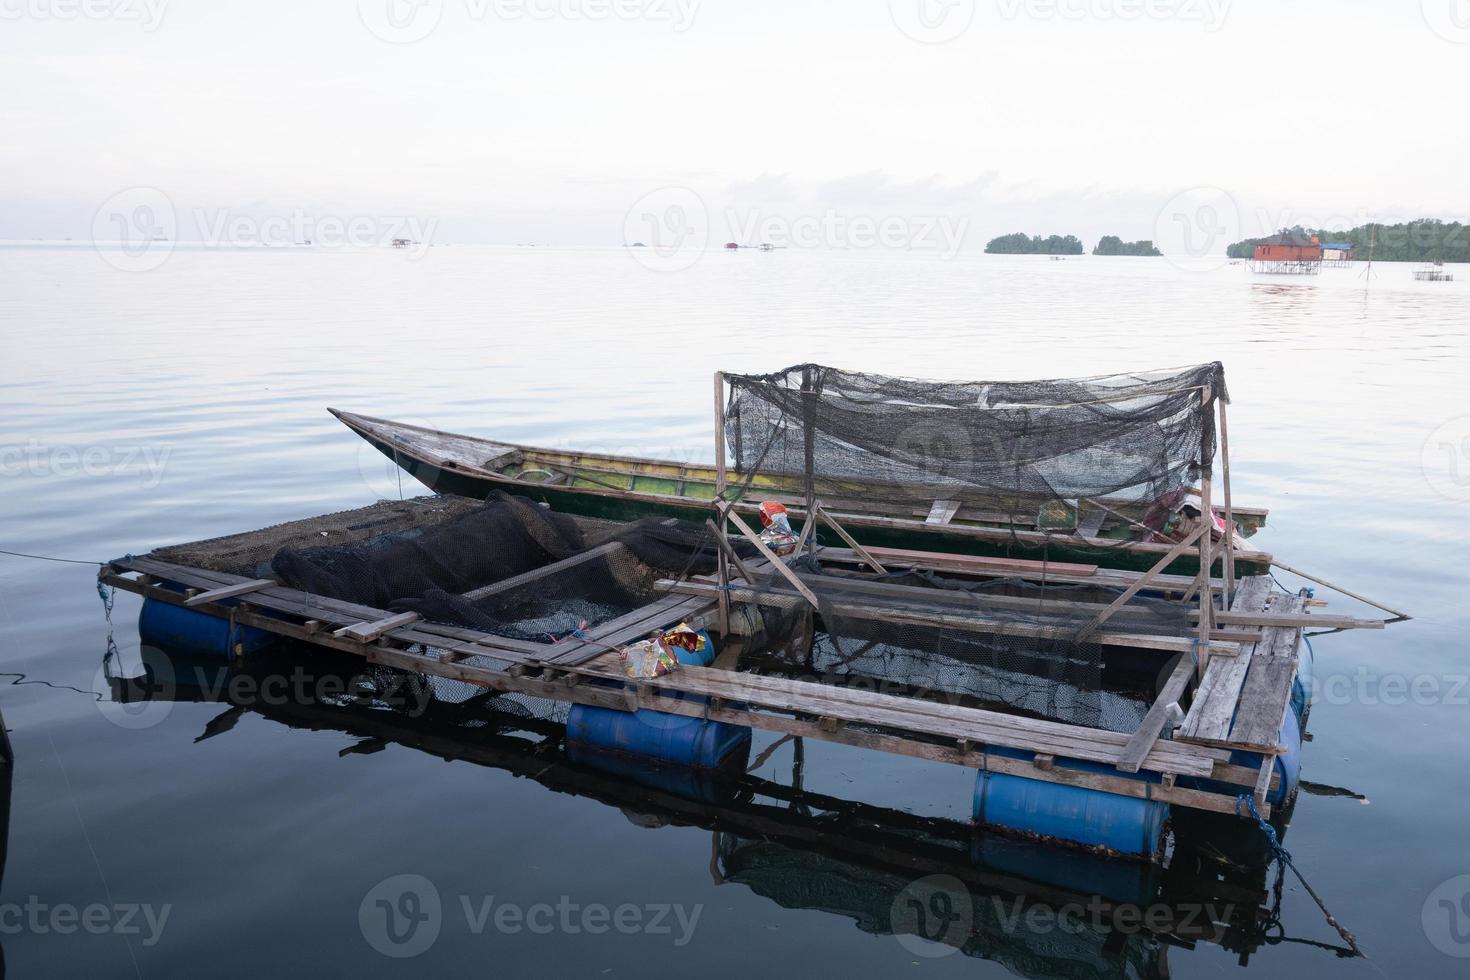 dit is keramba, een traditioneel hulpmiddel voor het kweken van vissen dat in het midden van de zee drijft, gemaakt van netten voor het kweken van vis foto